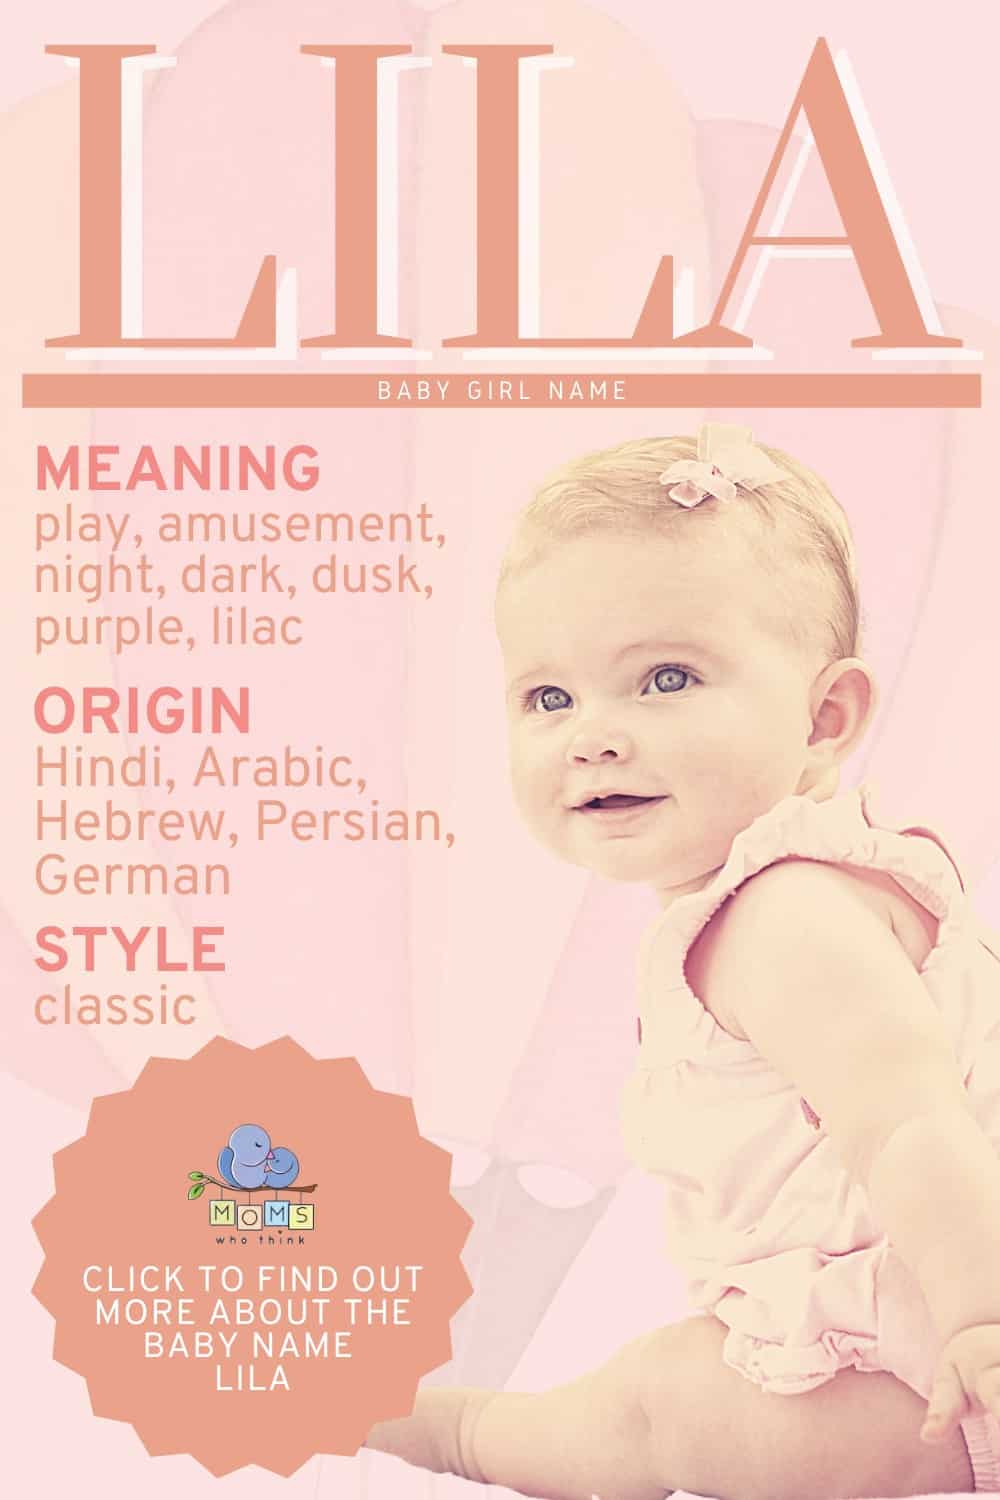 Baby name Lila